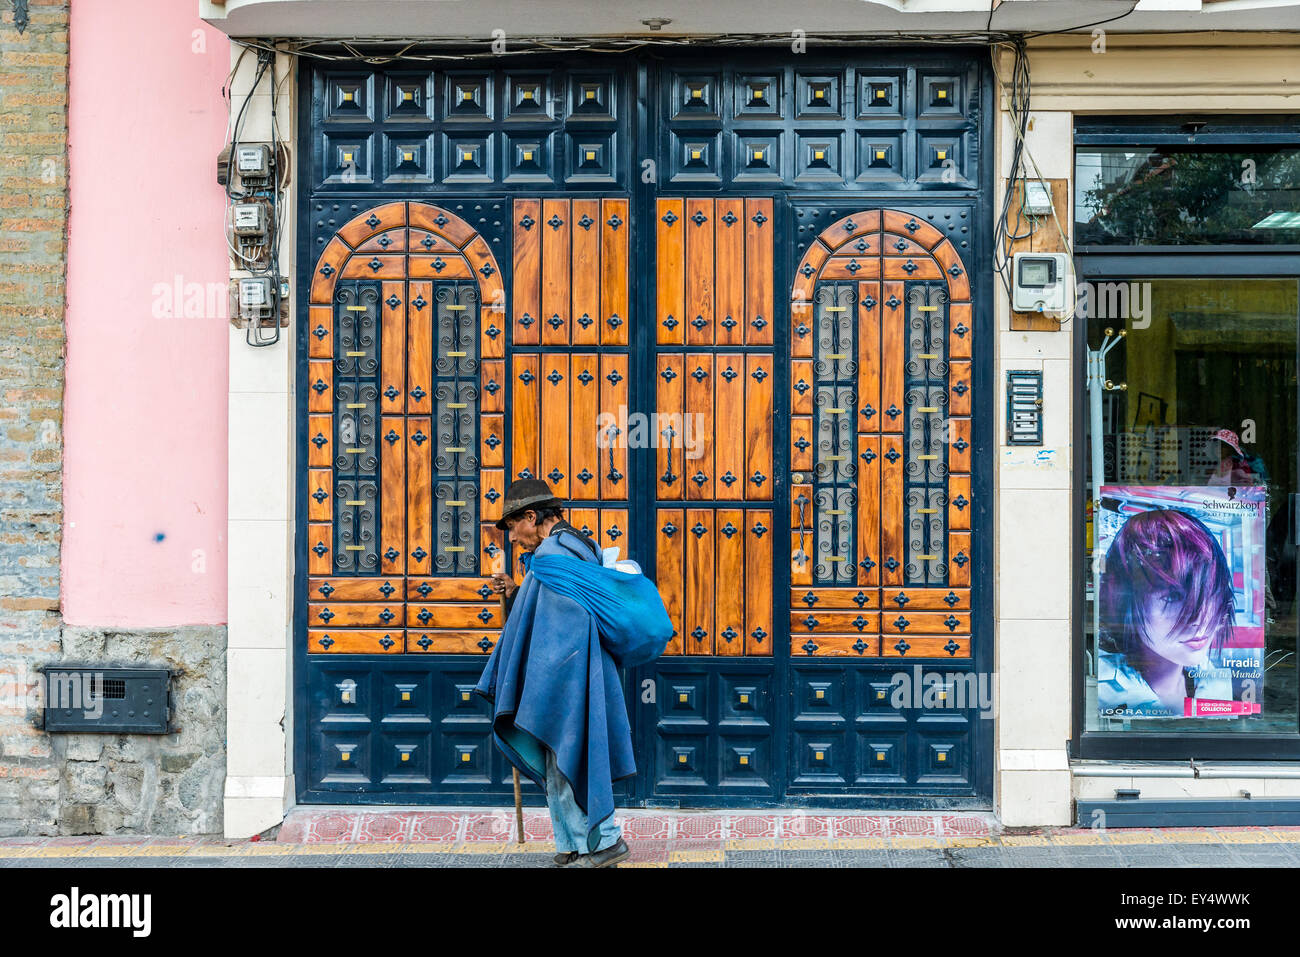 Un vieil homme en habits traditionnels de la région andine promenades dans face d'une porte en bois sur la rue. Otavalo, Équateur. Banque D'Images